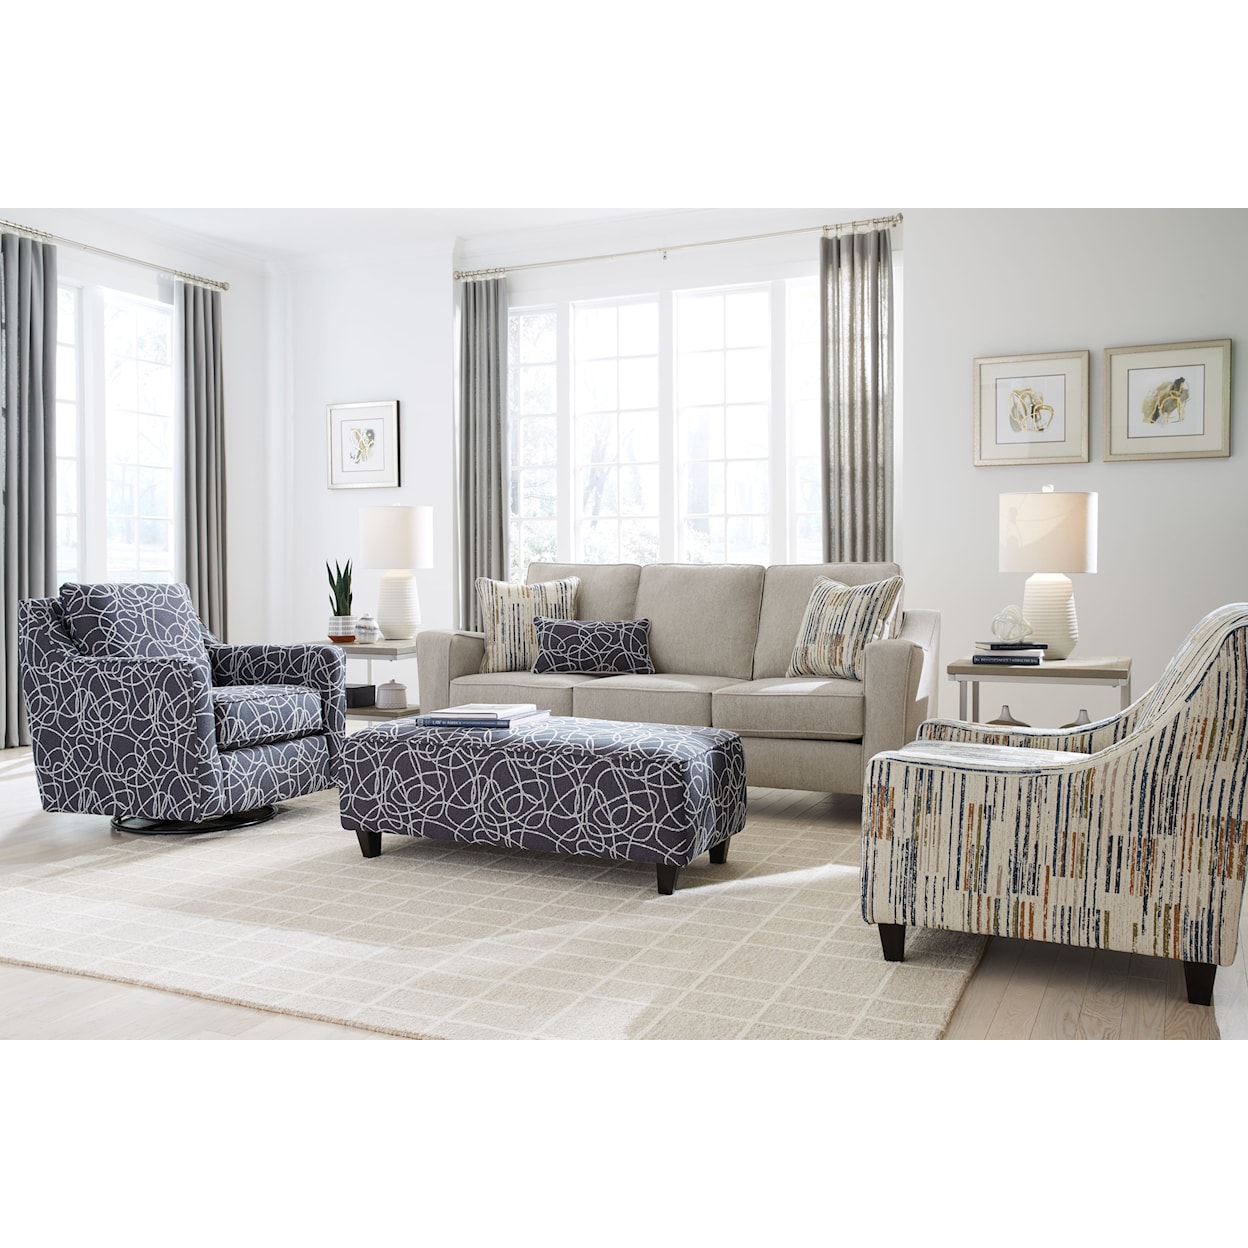 Fusion Furniture 3005 LILAVATI MIST Living Room Set